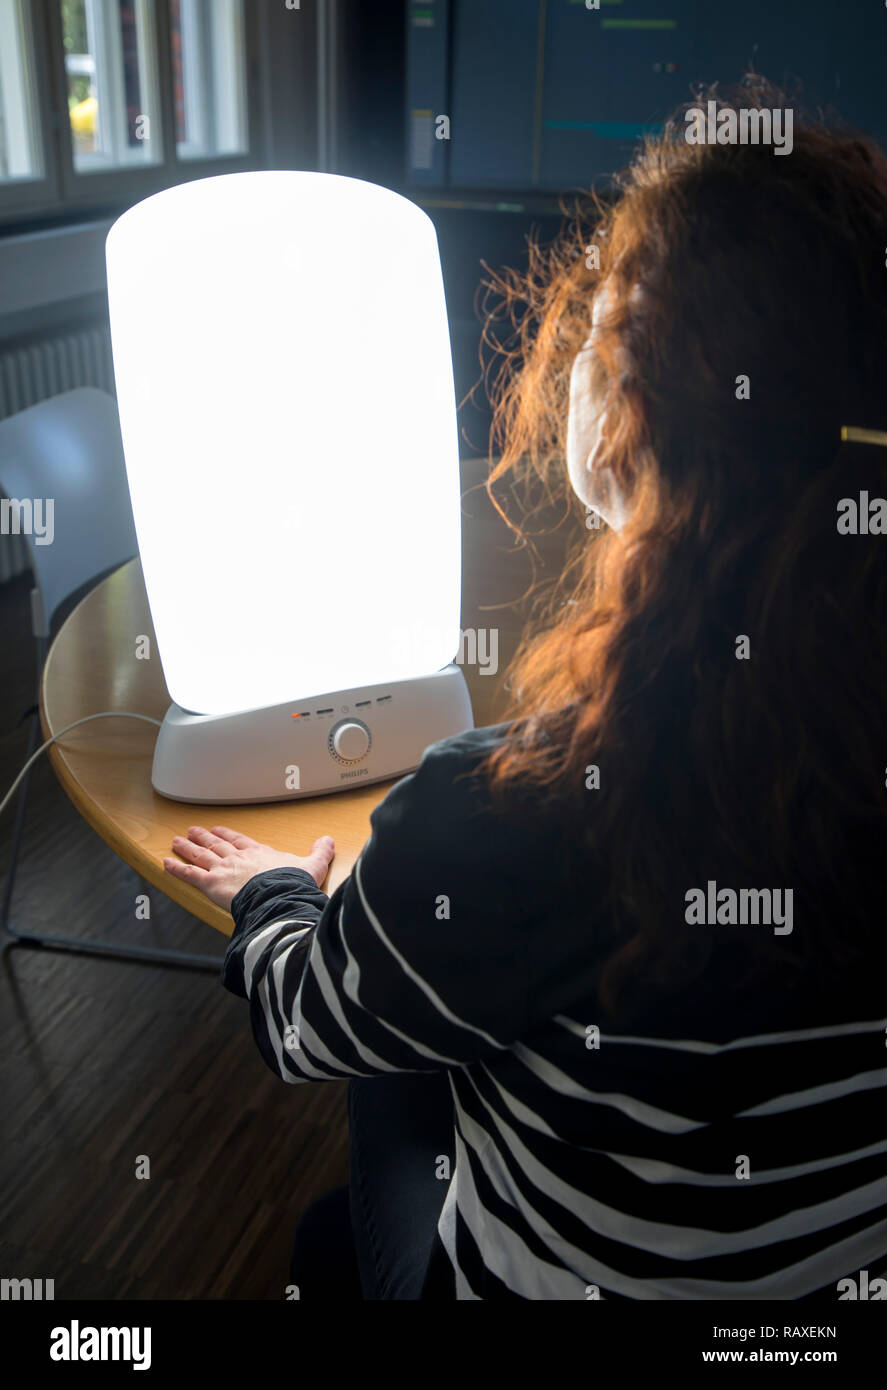 Lampe de luminothérapie avec lumière du jour, une femme assise en face d'une lampe qui imite la lumière du jour, la thérapie contre la dépression hivernale, en raison de trop peu Banque D'Images